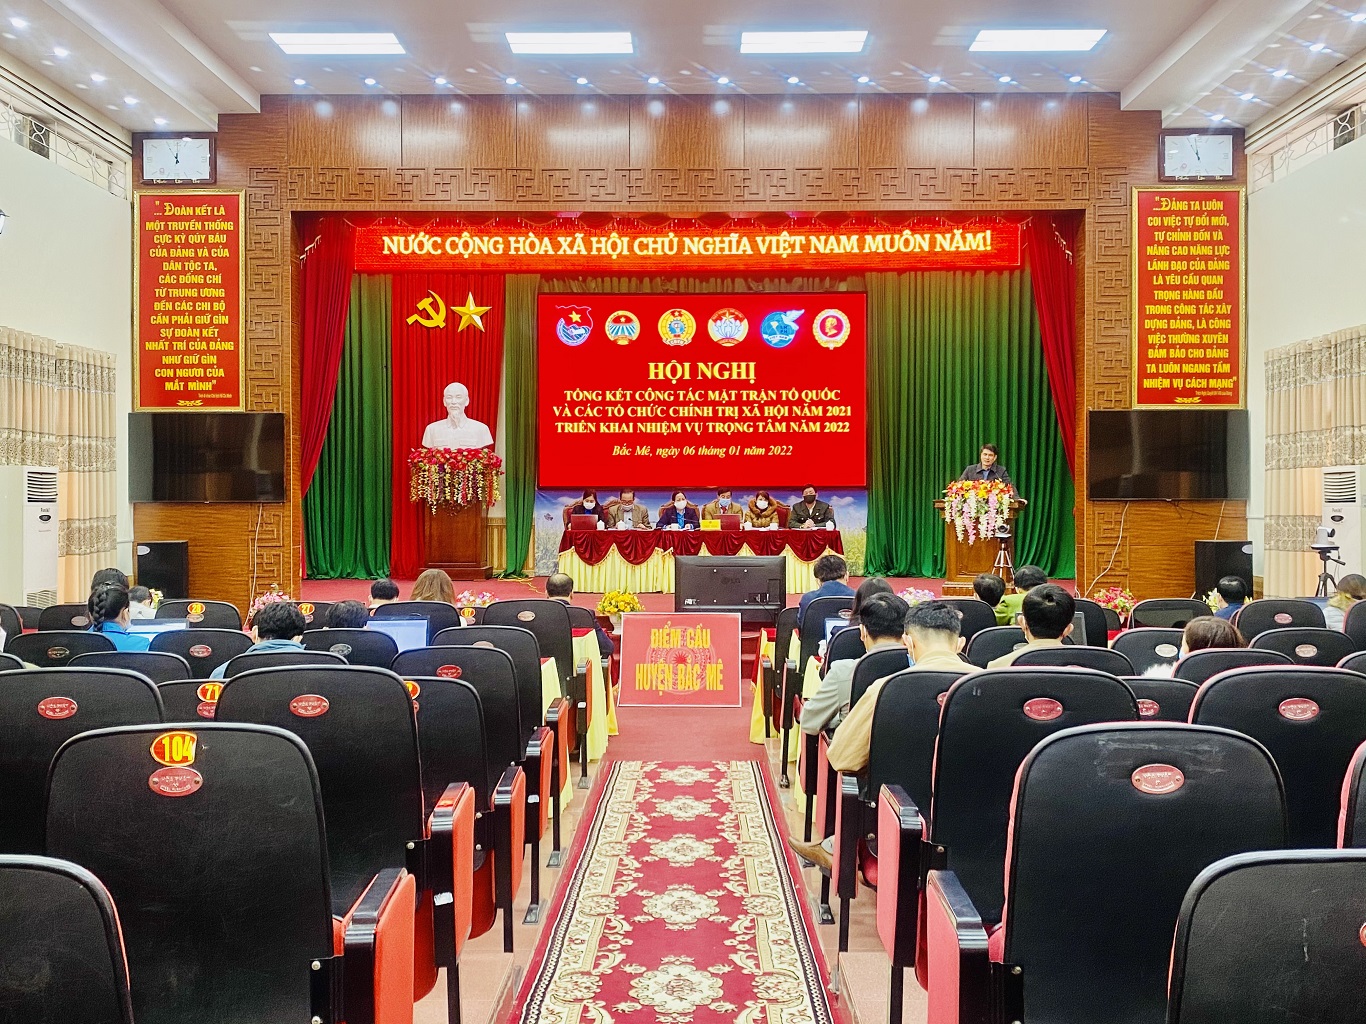 Hội nghị tổng kết MTTQ và các đoàn thể chính trị xã hội huyện